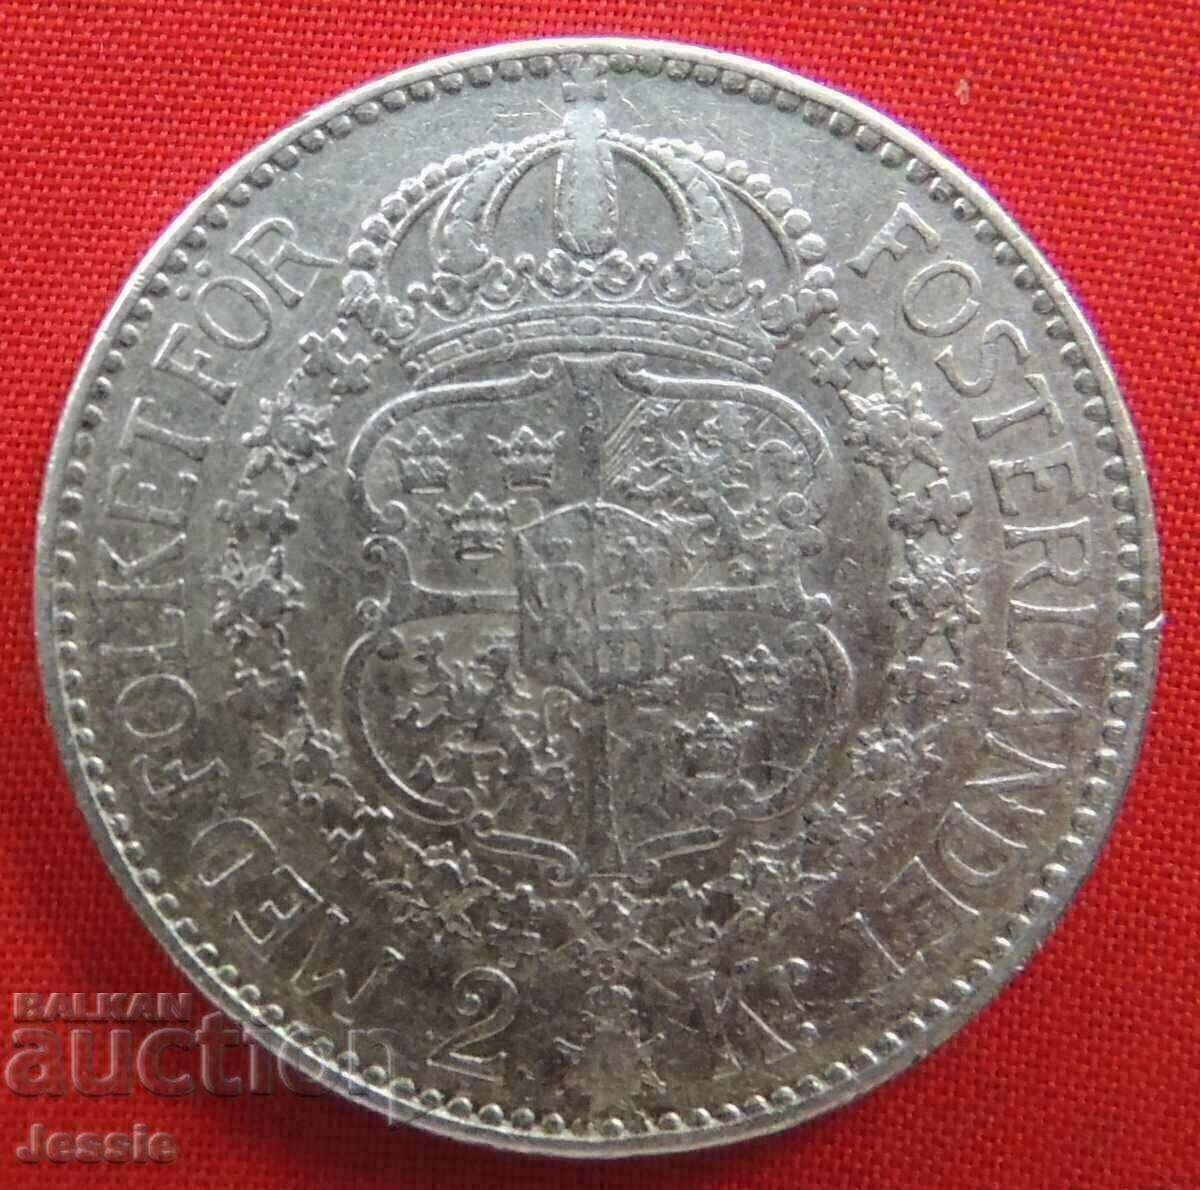 2 coroane Suedia 1924 W argint